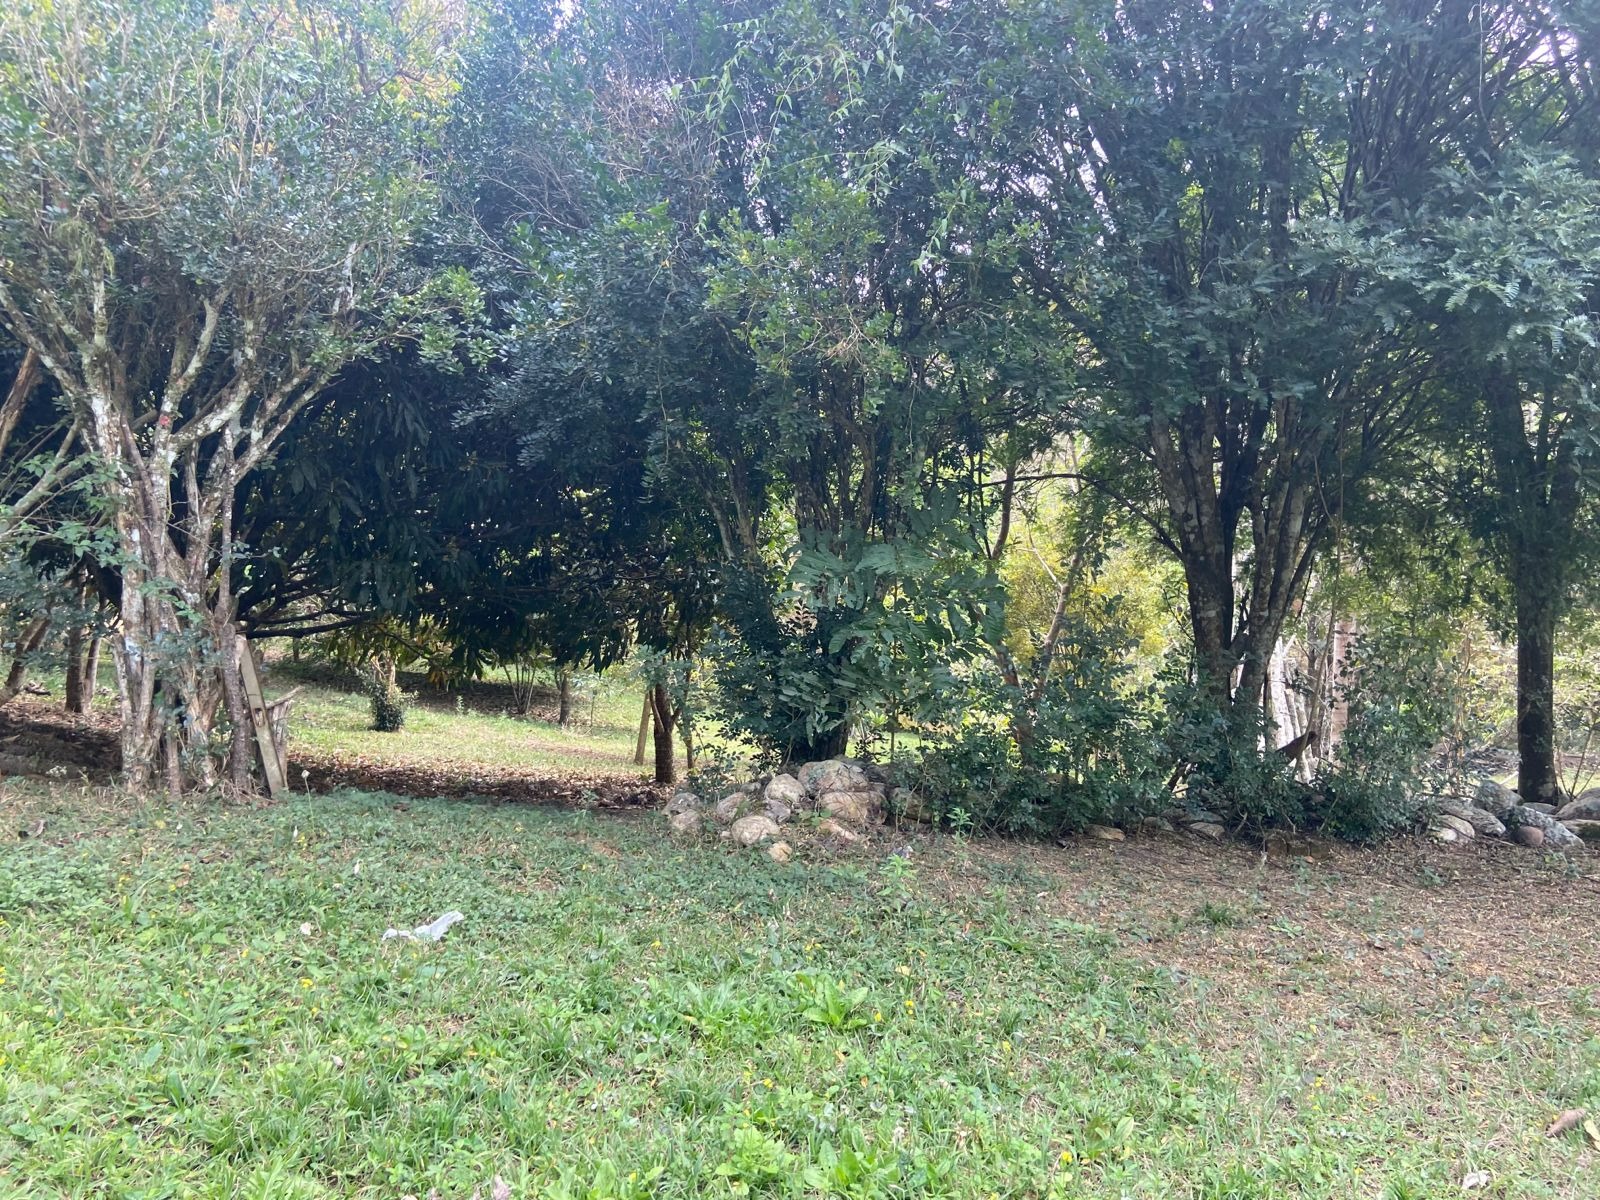 Sítio de 6 ha em São José dos Campos, SP